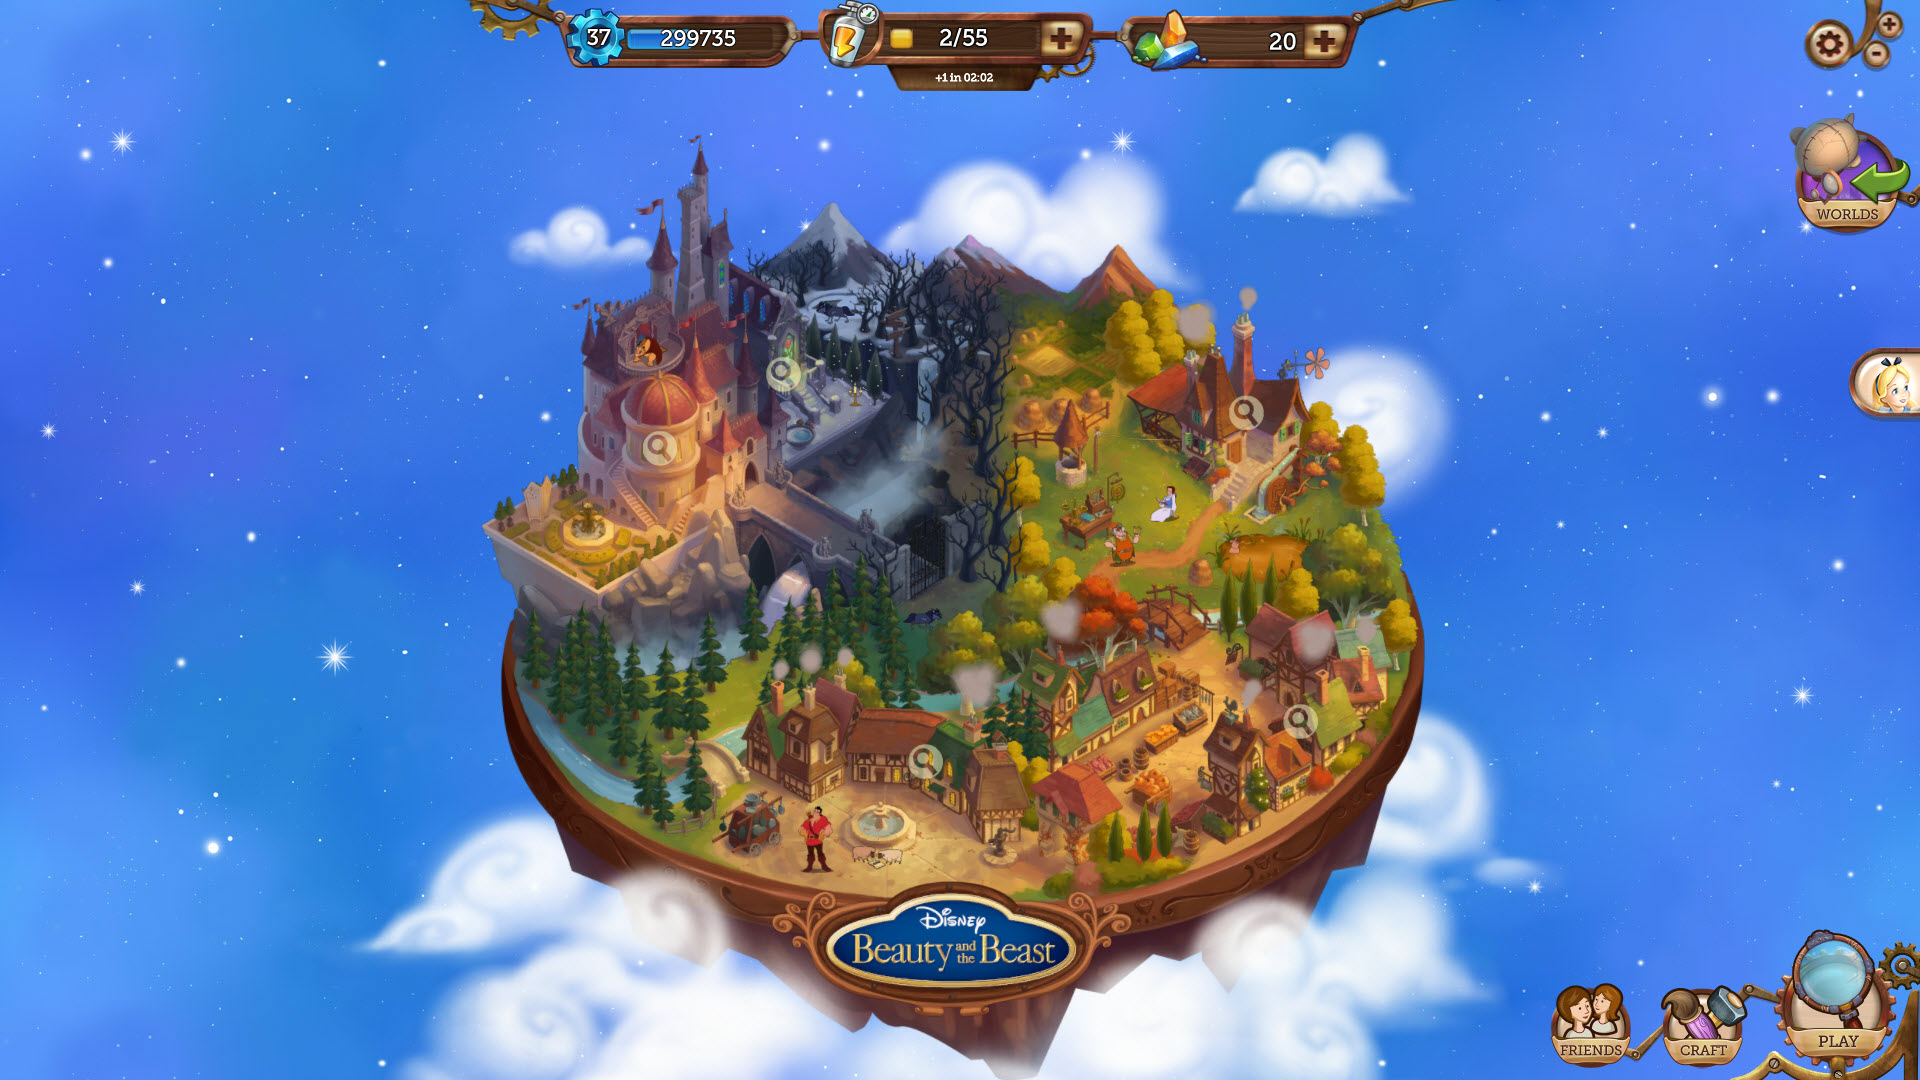 Beauty and the Beast | Disney Hidden Worlds Wiki | FANDOM powered ...